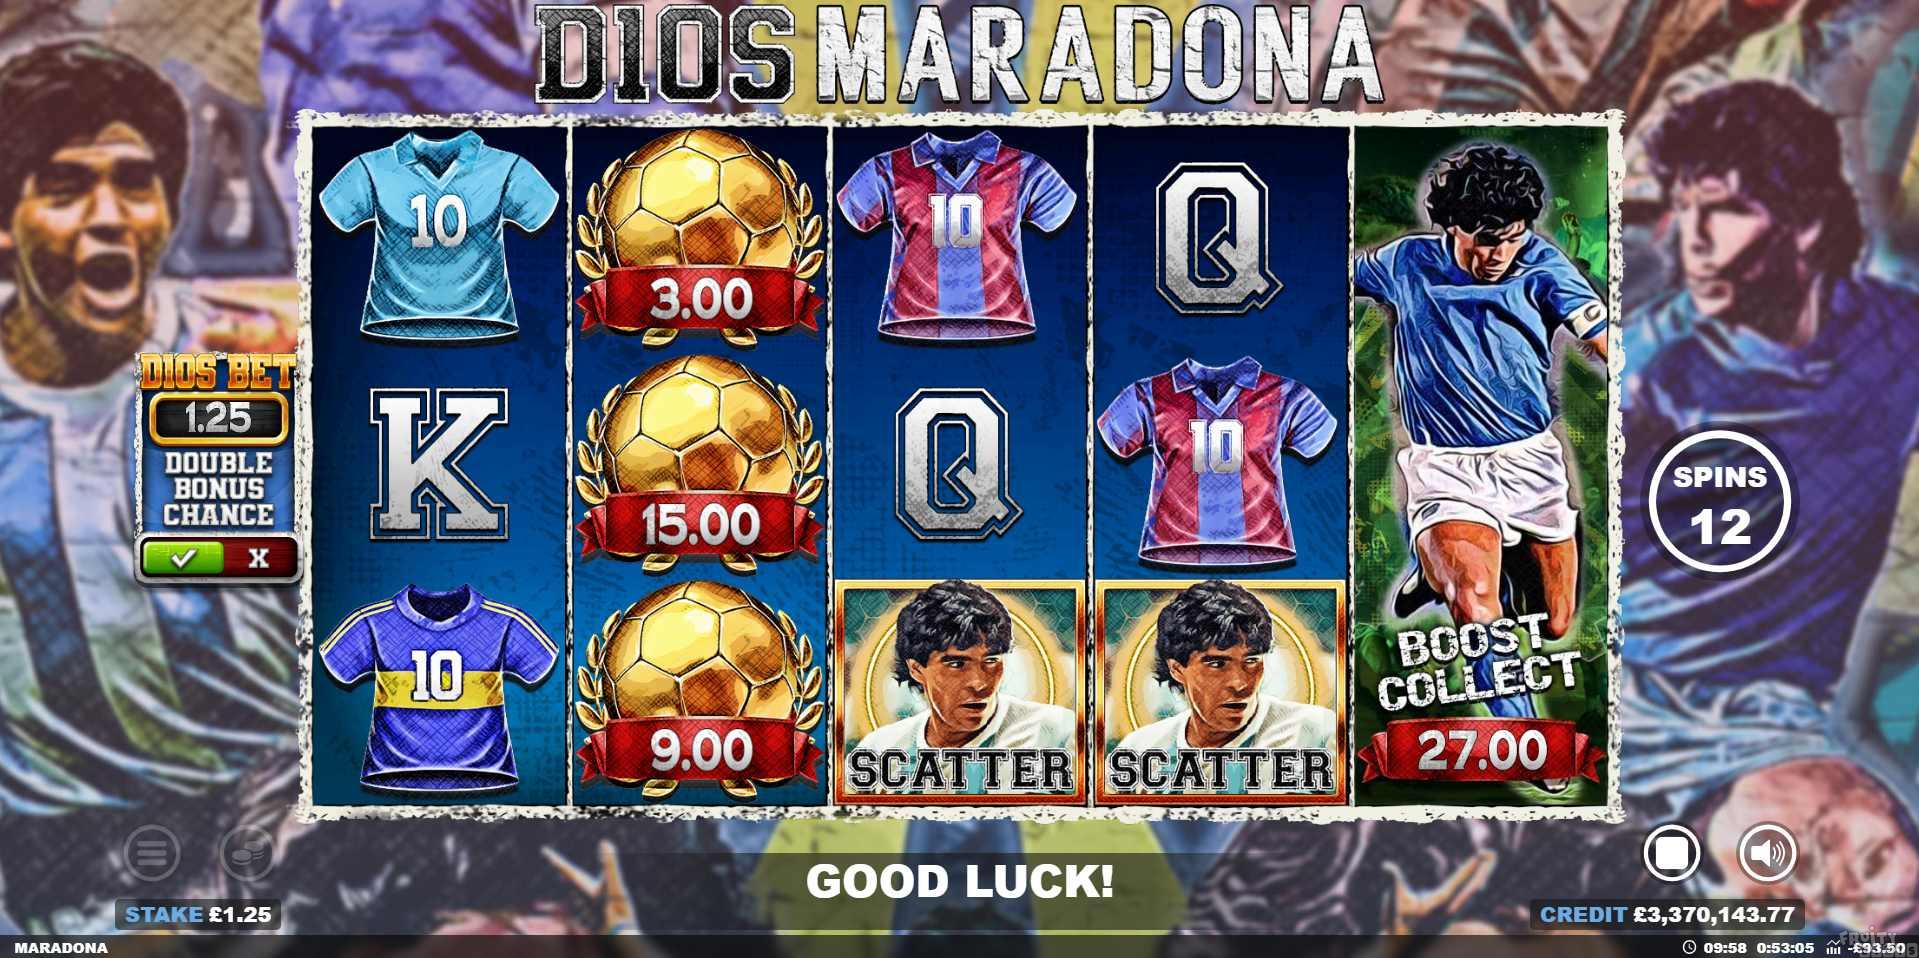 D10S Maradona Boost Collect